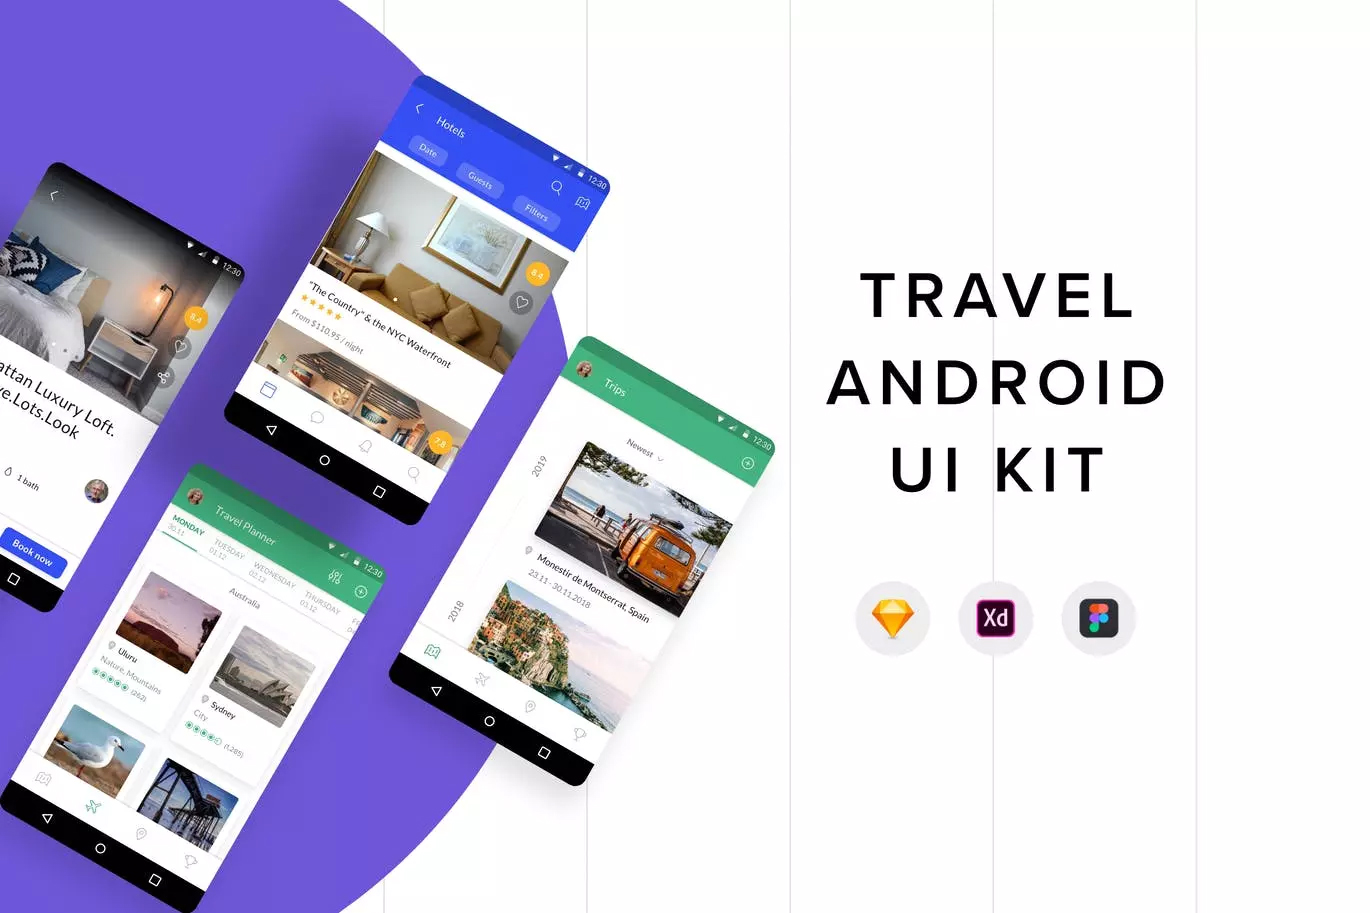 旅游日志旅行主题Android应用UI设计套件 Travel